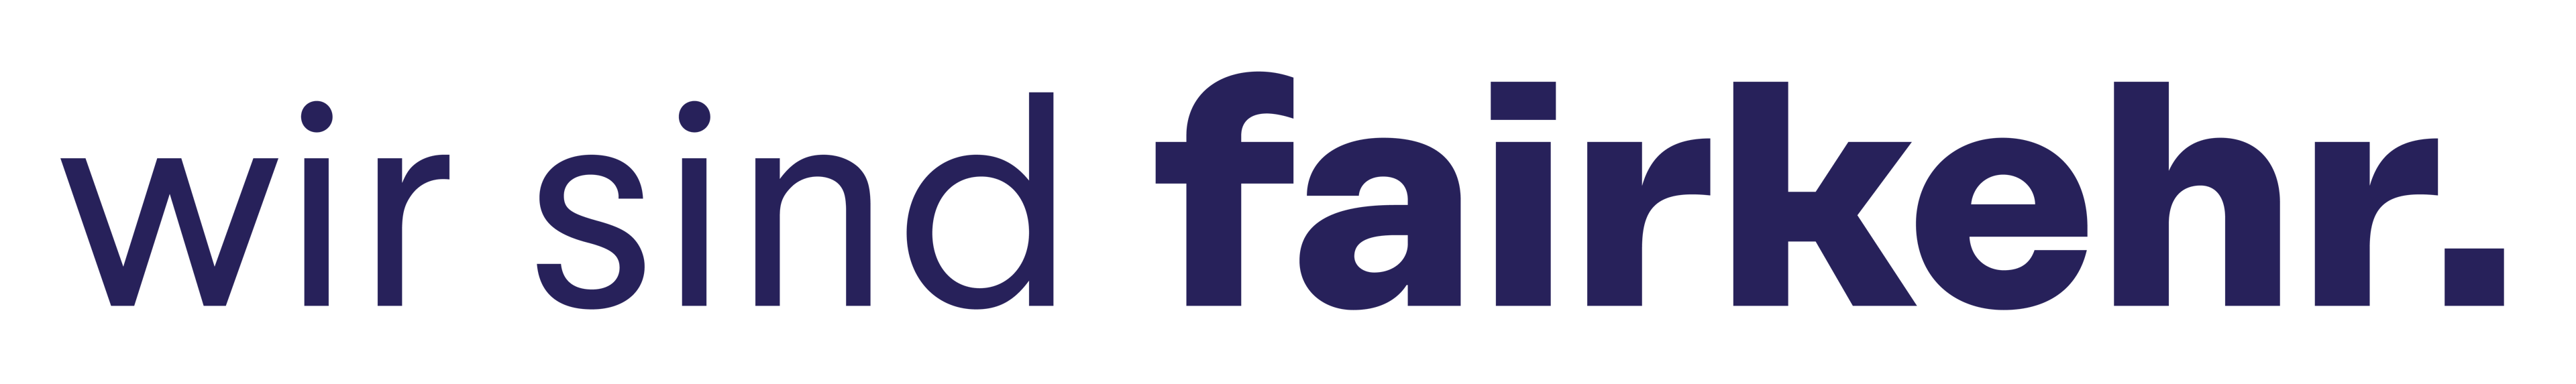 fairkehr Agentur & Verlag logo